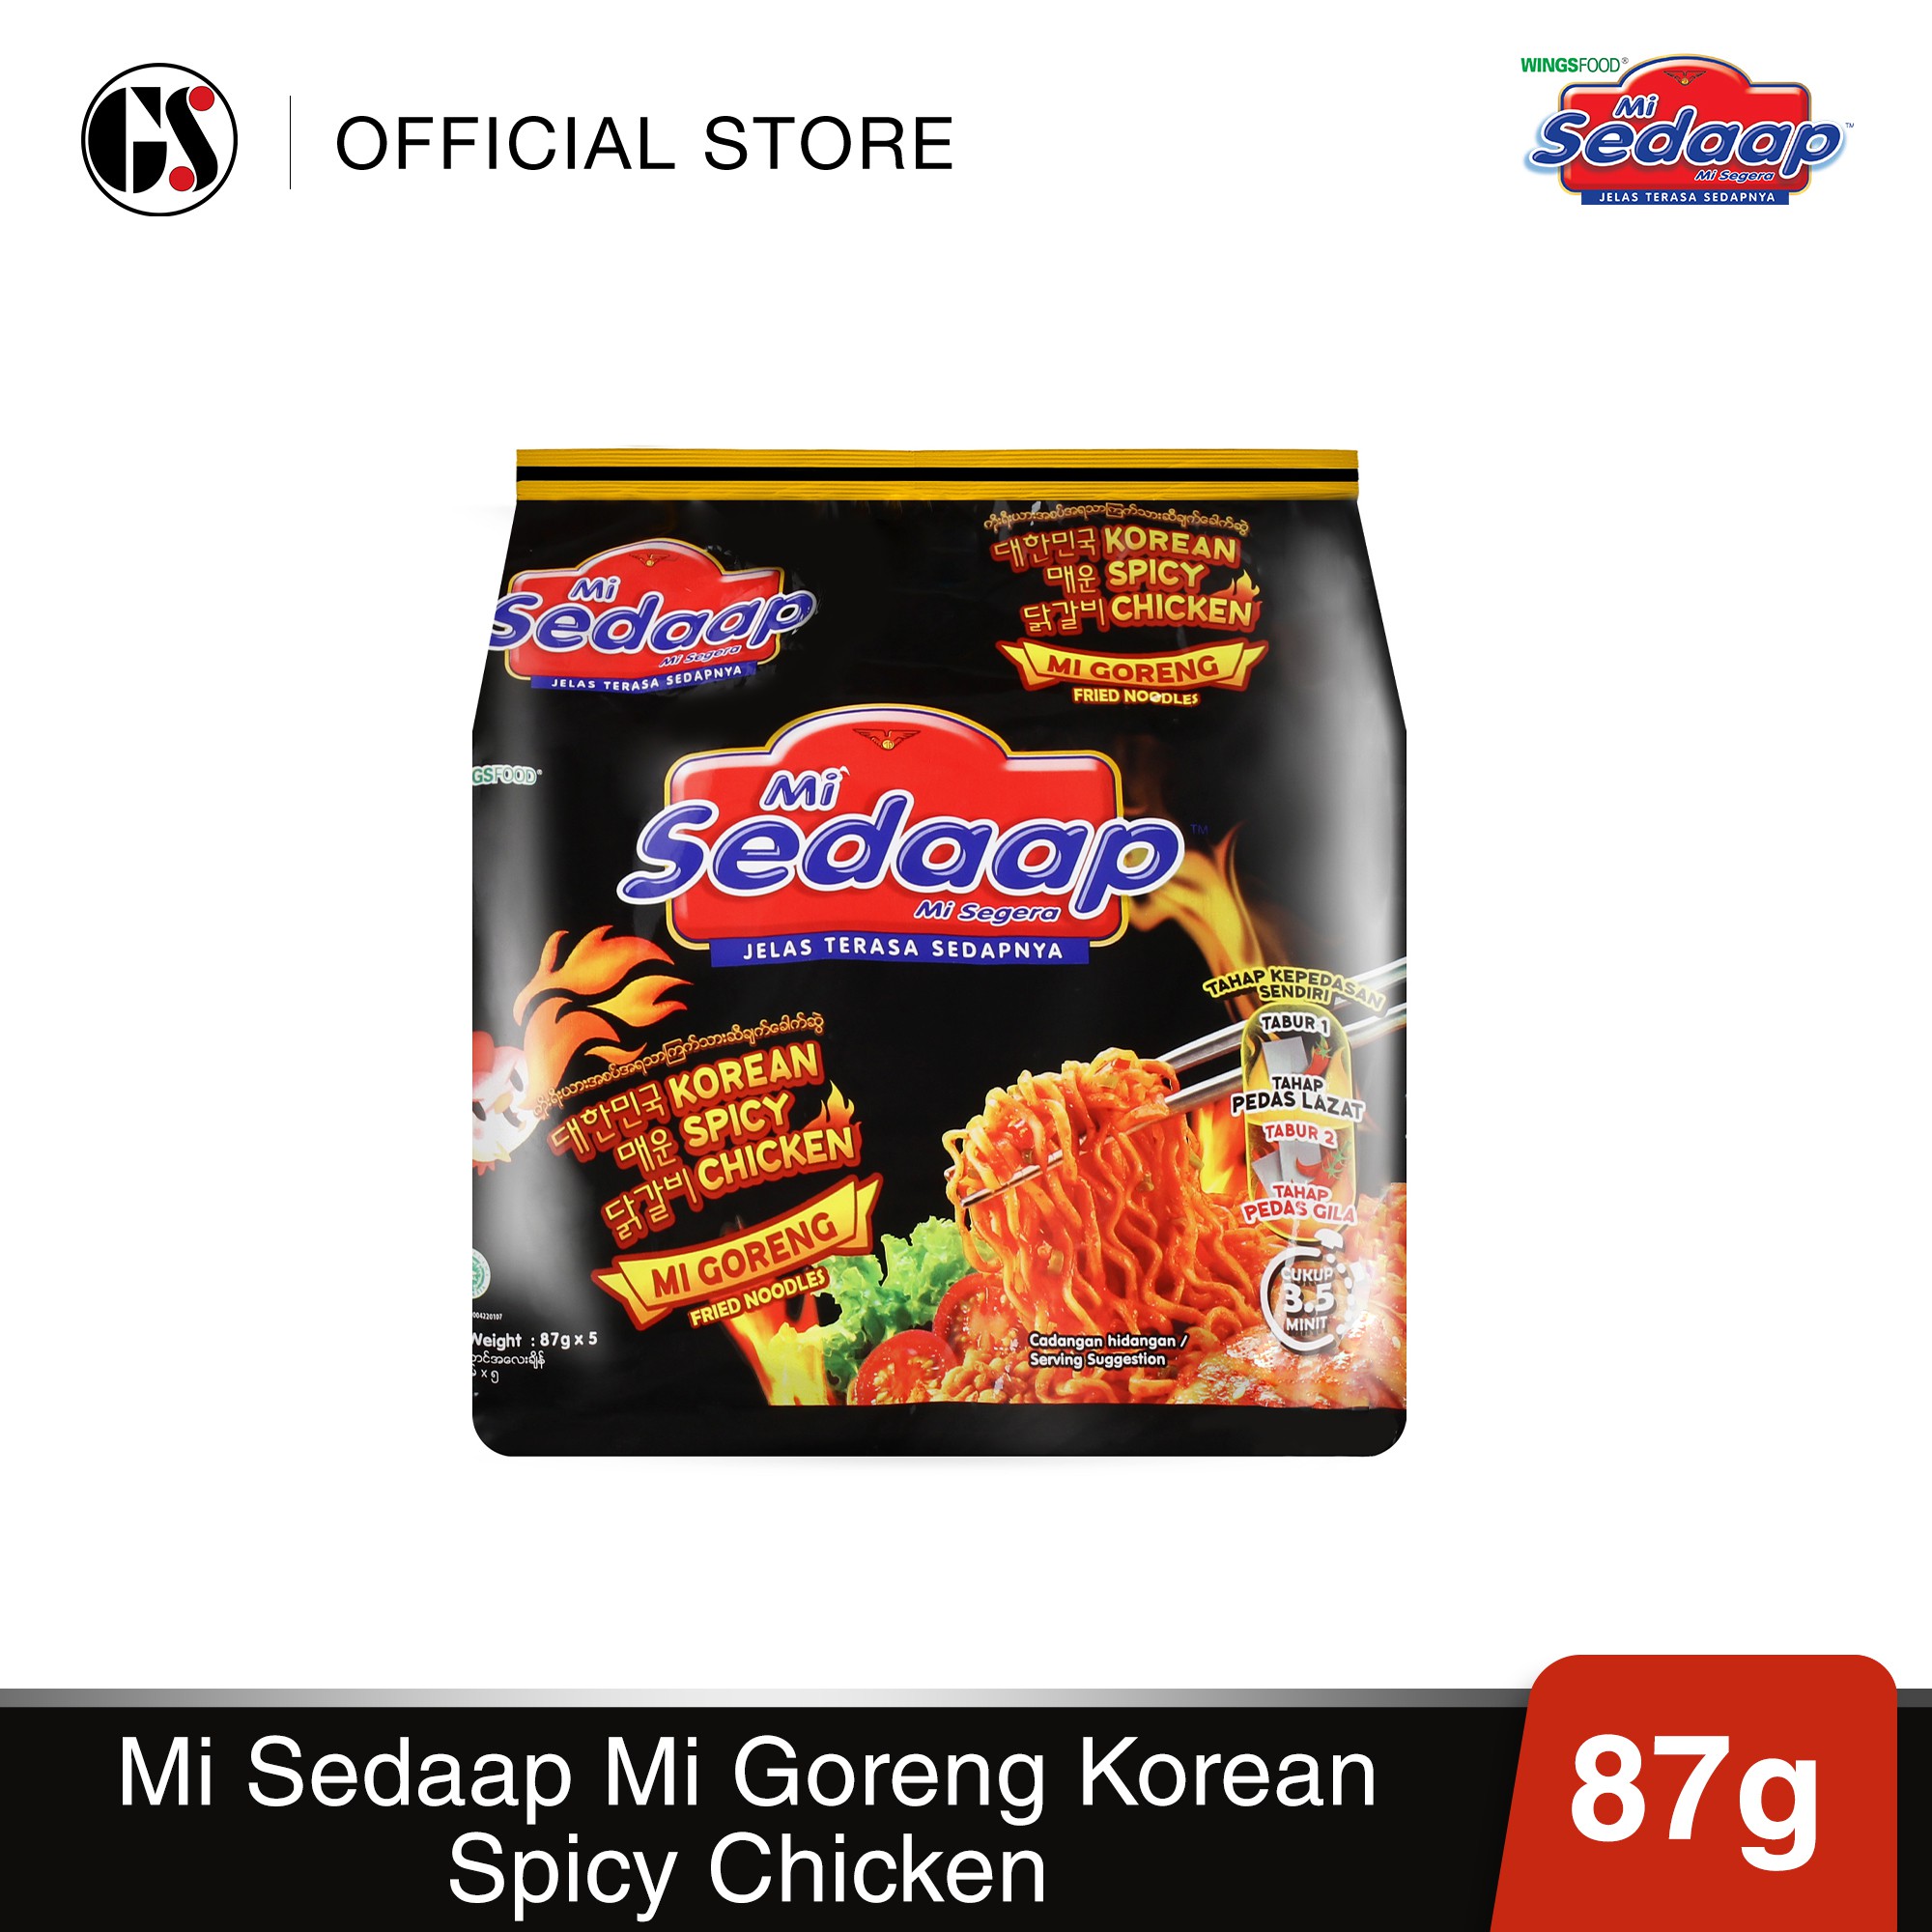 Spicy chicken sedaap korean mi